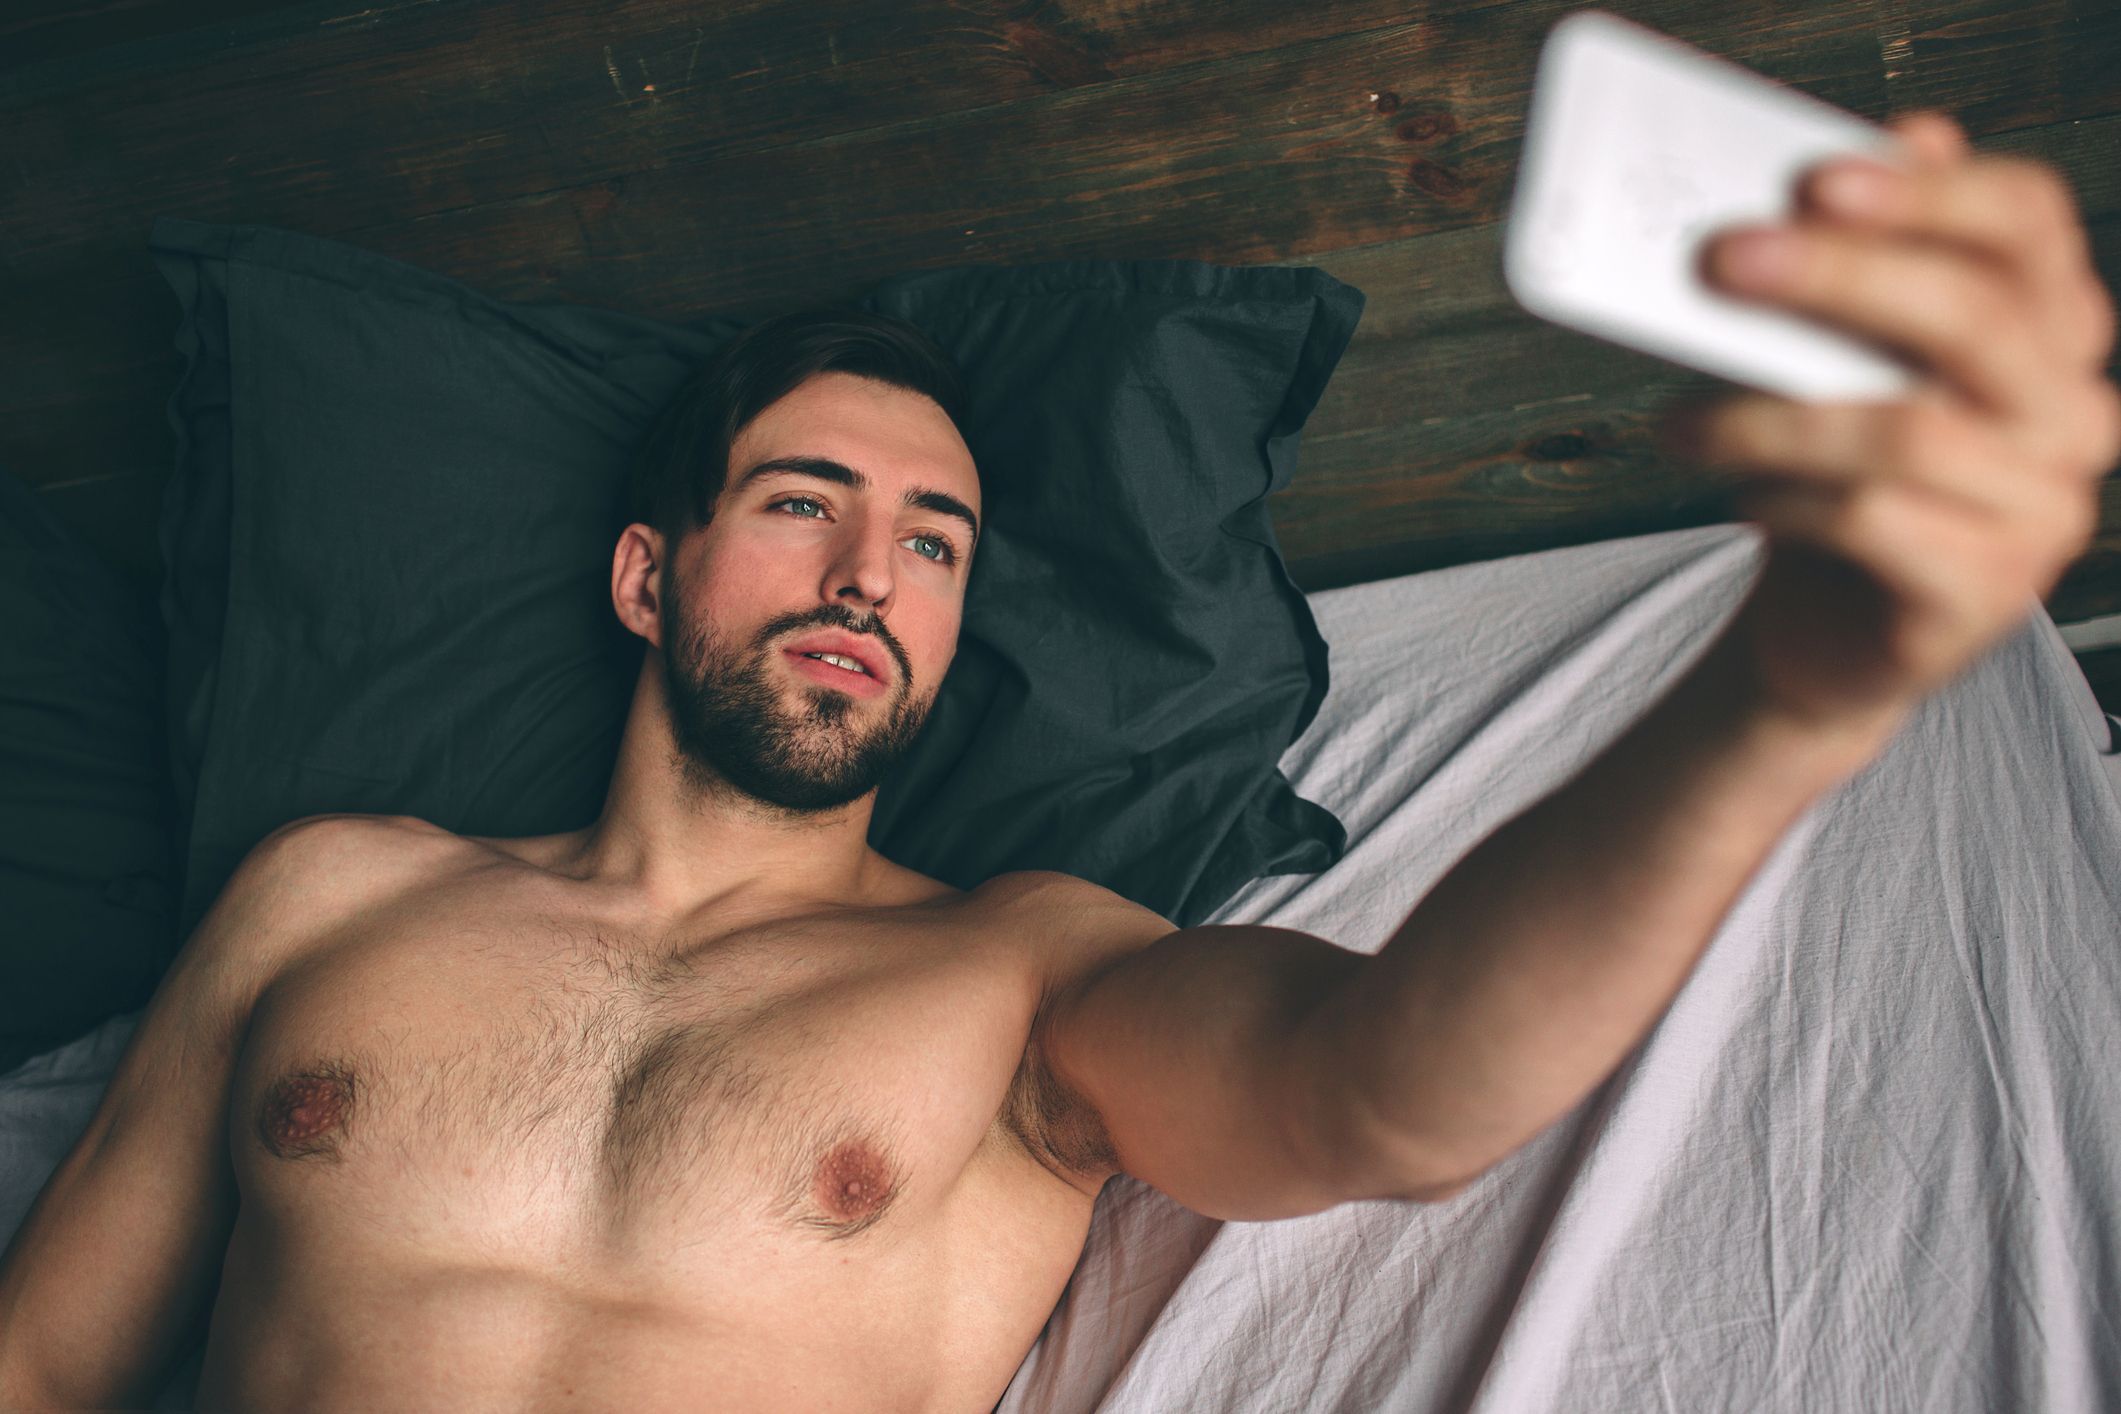 boner in bed selfie